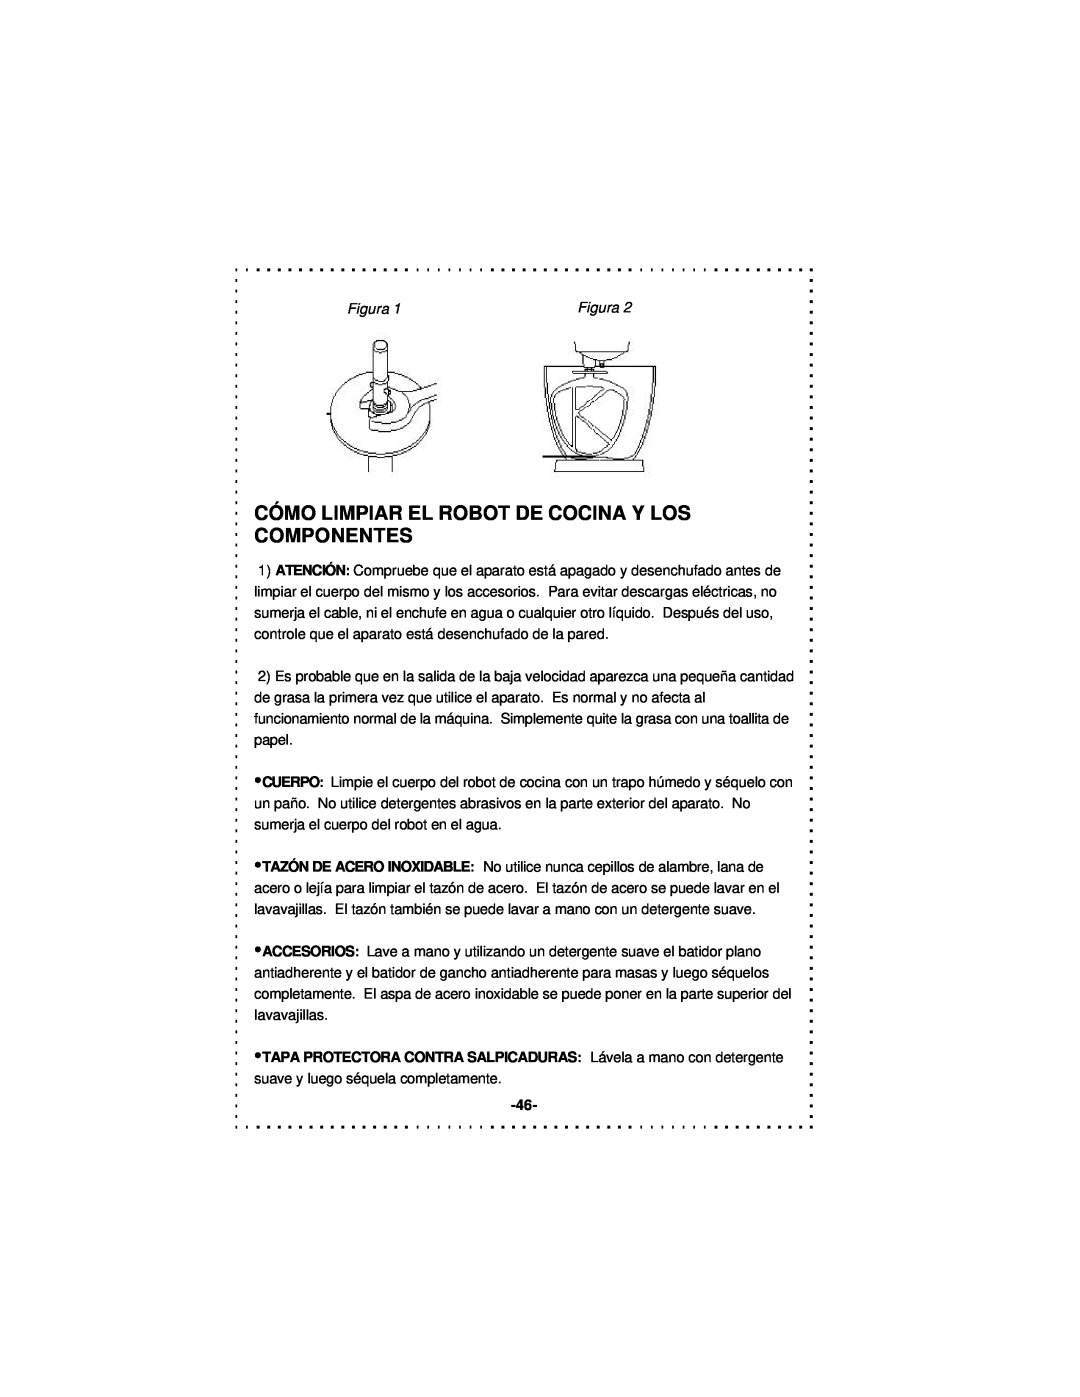 DeLonghi DSM5 - 7 Series instruction manual Cómo Limpiar El Robot De Cocina Y Los Componentes, Figura 